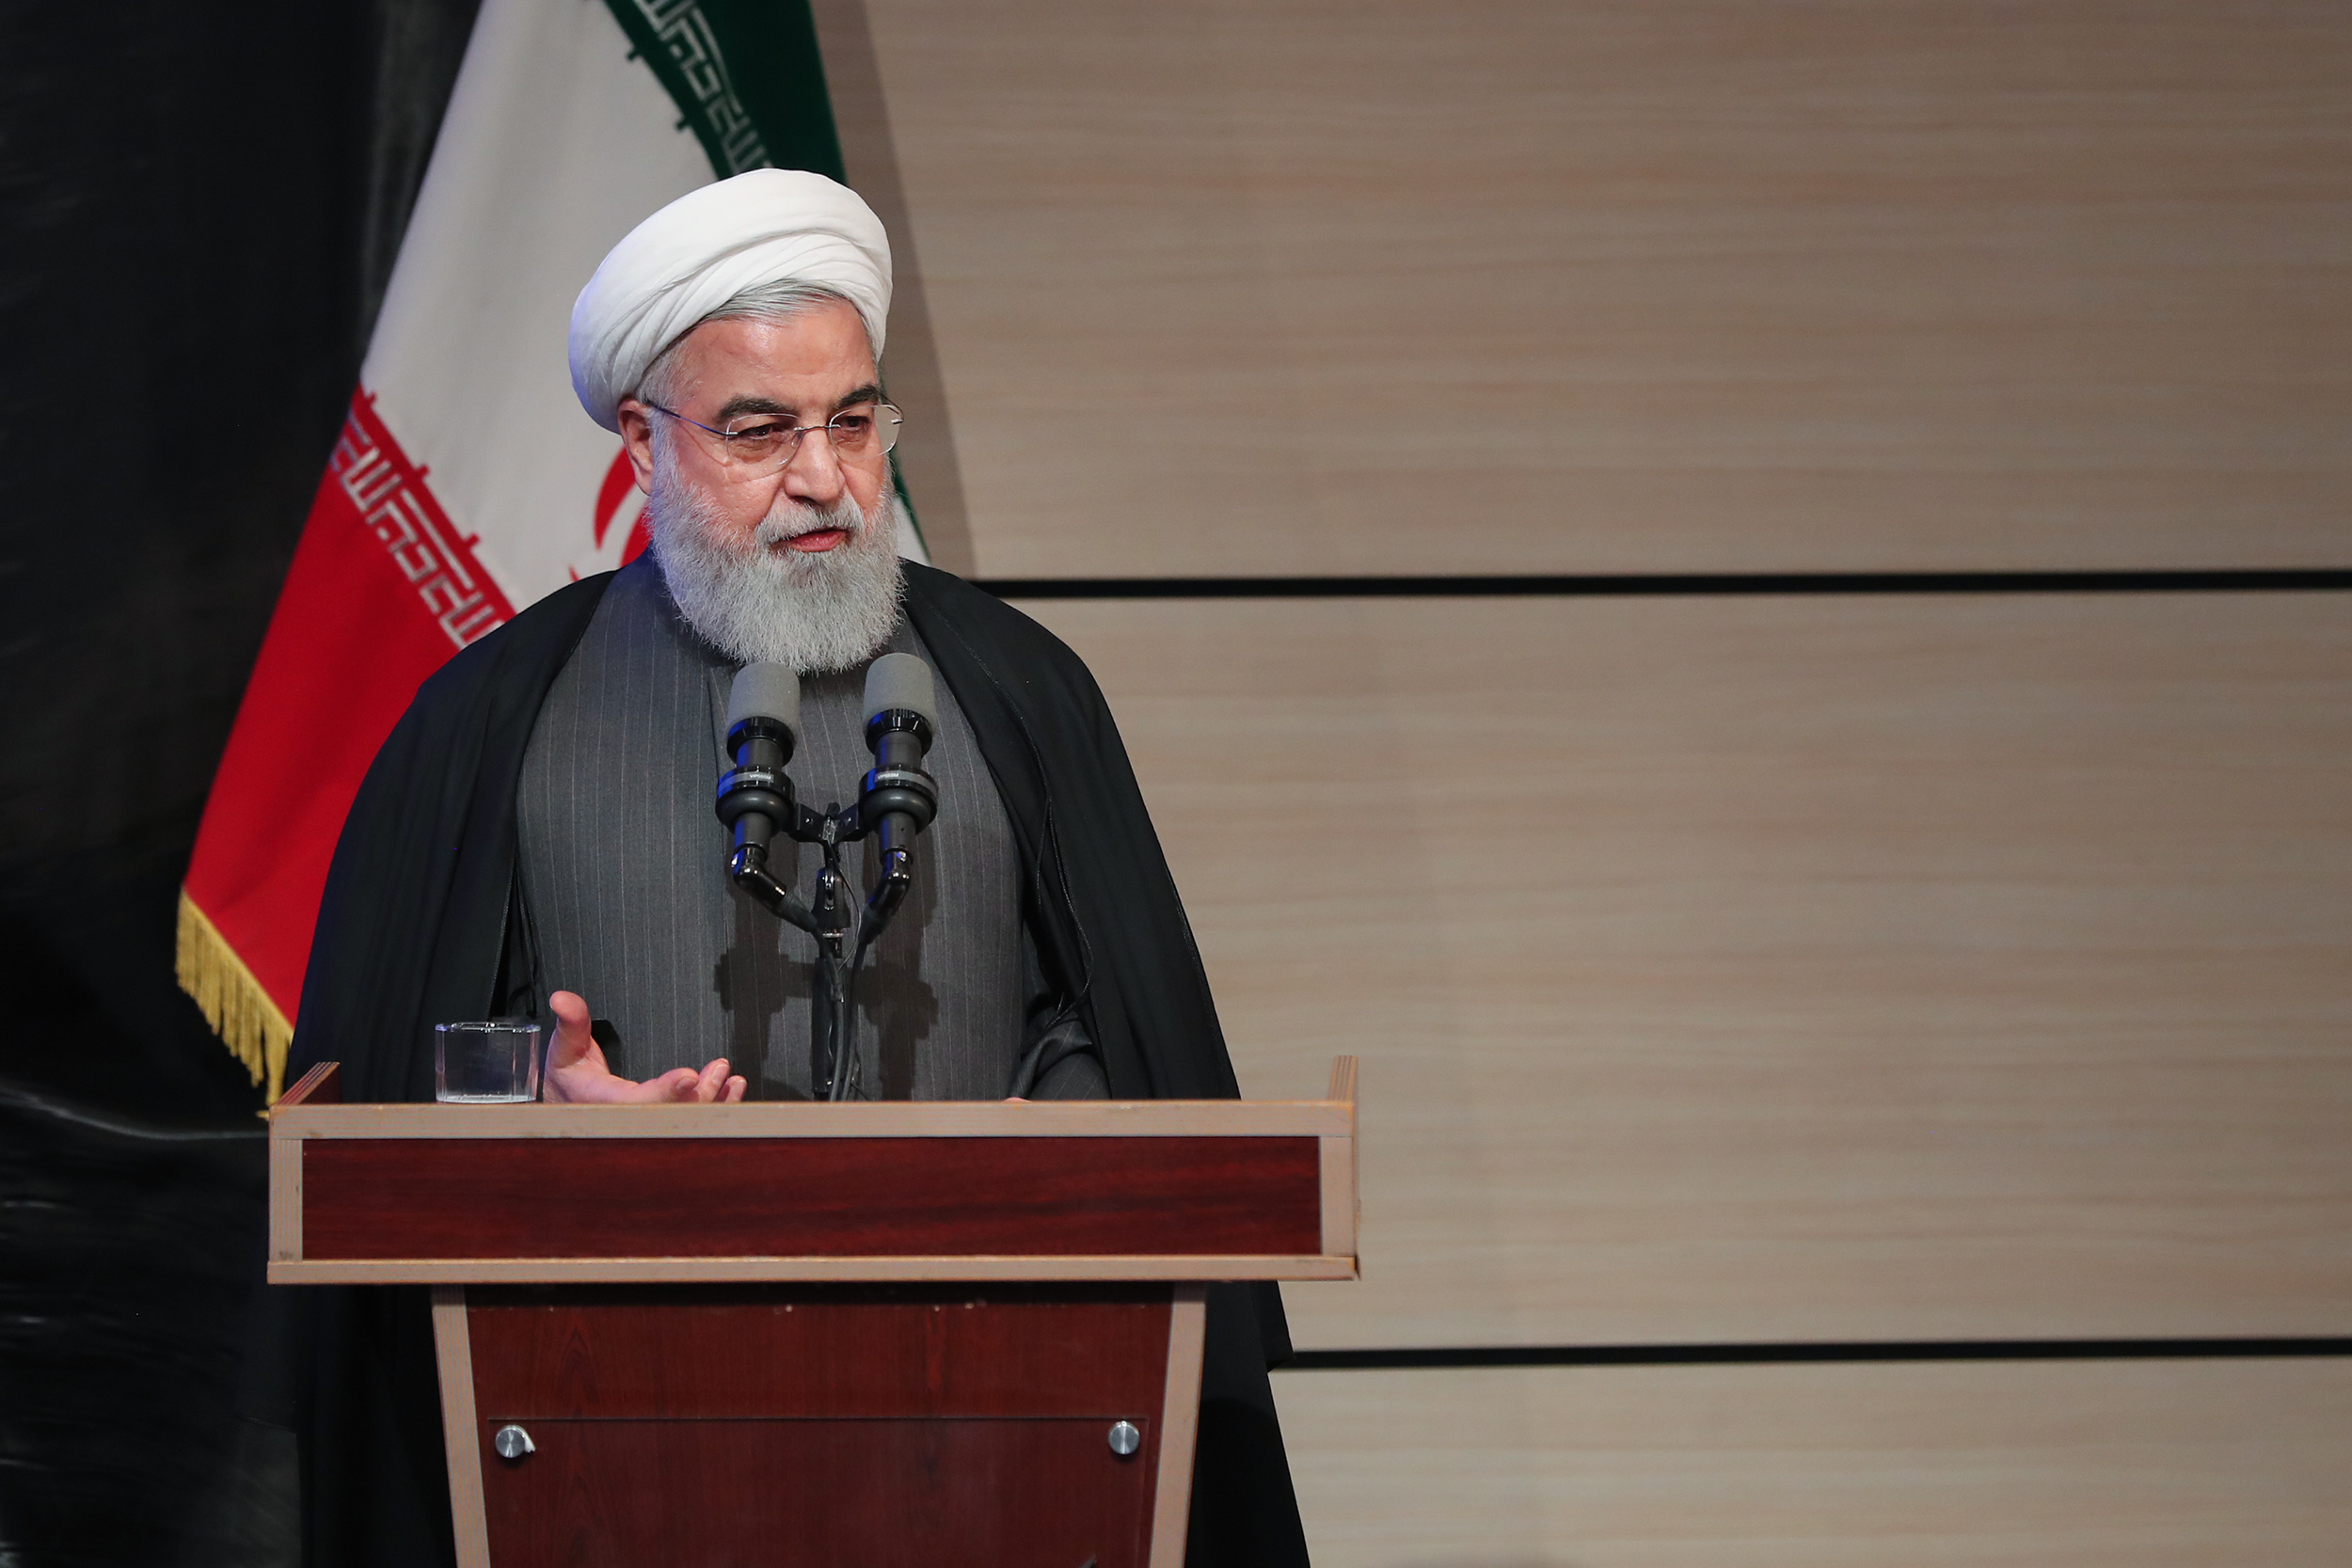  الرئيس روحاني: الفكر هو الركيزة الأولى للحرية 